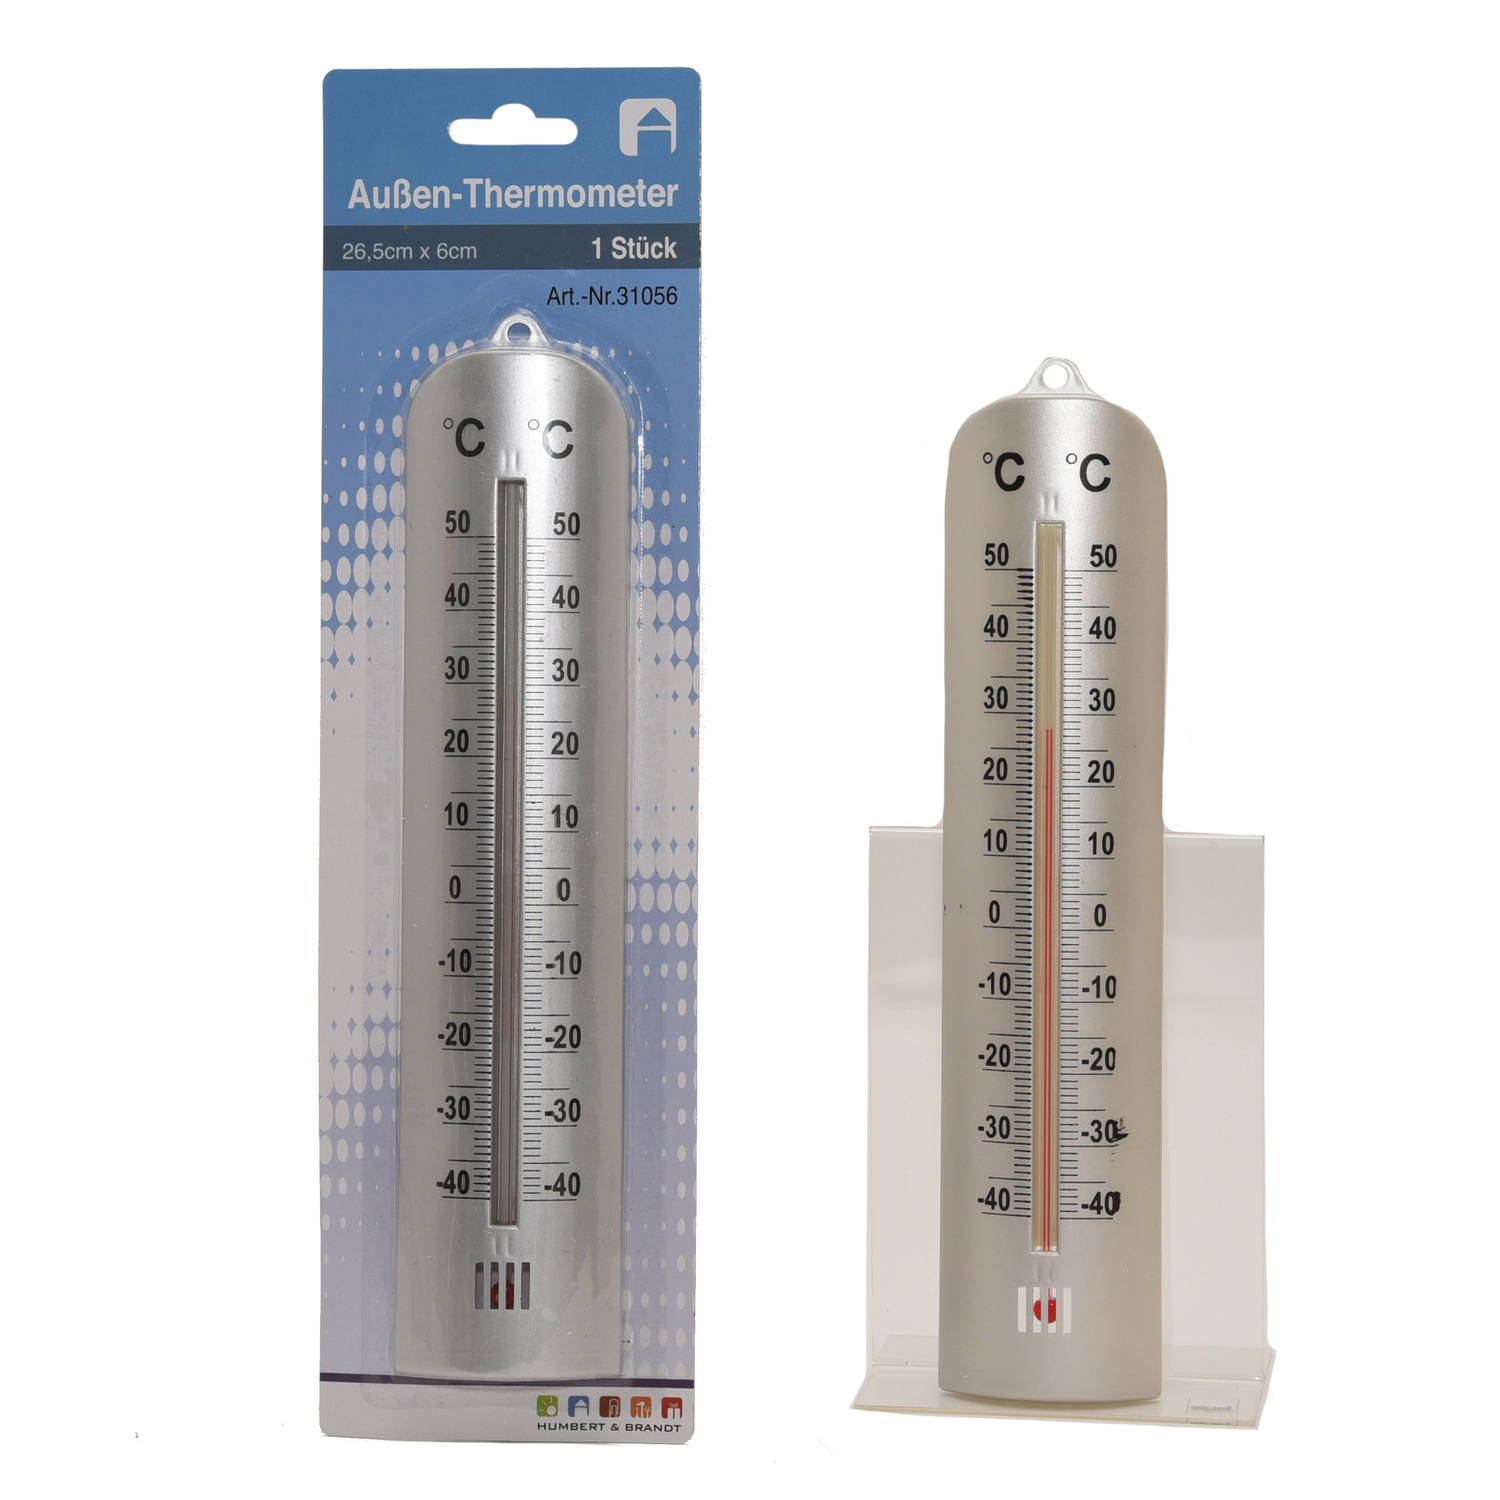 verbergen boeket Heel Binnen/buiten thermometer RVS look 26 x 6 cm - Buitenthermometers | Blokker